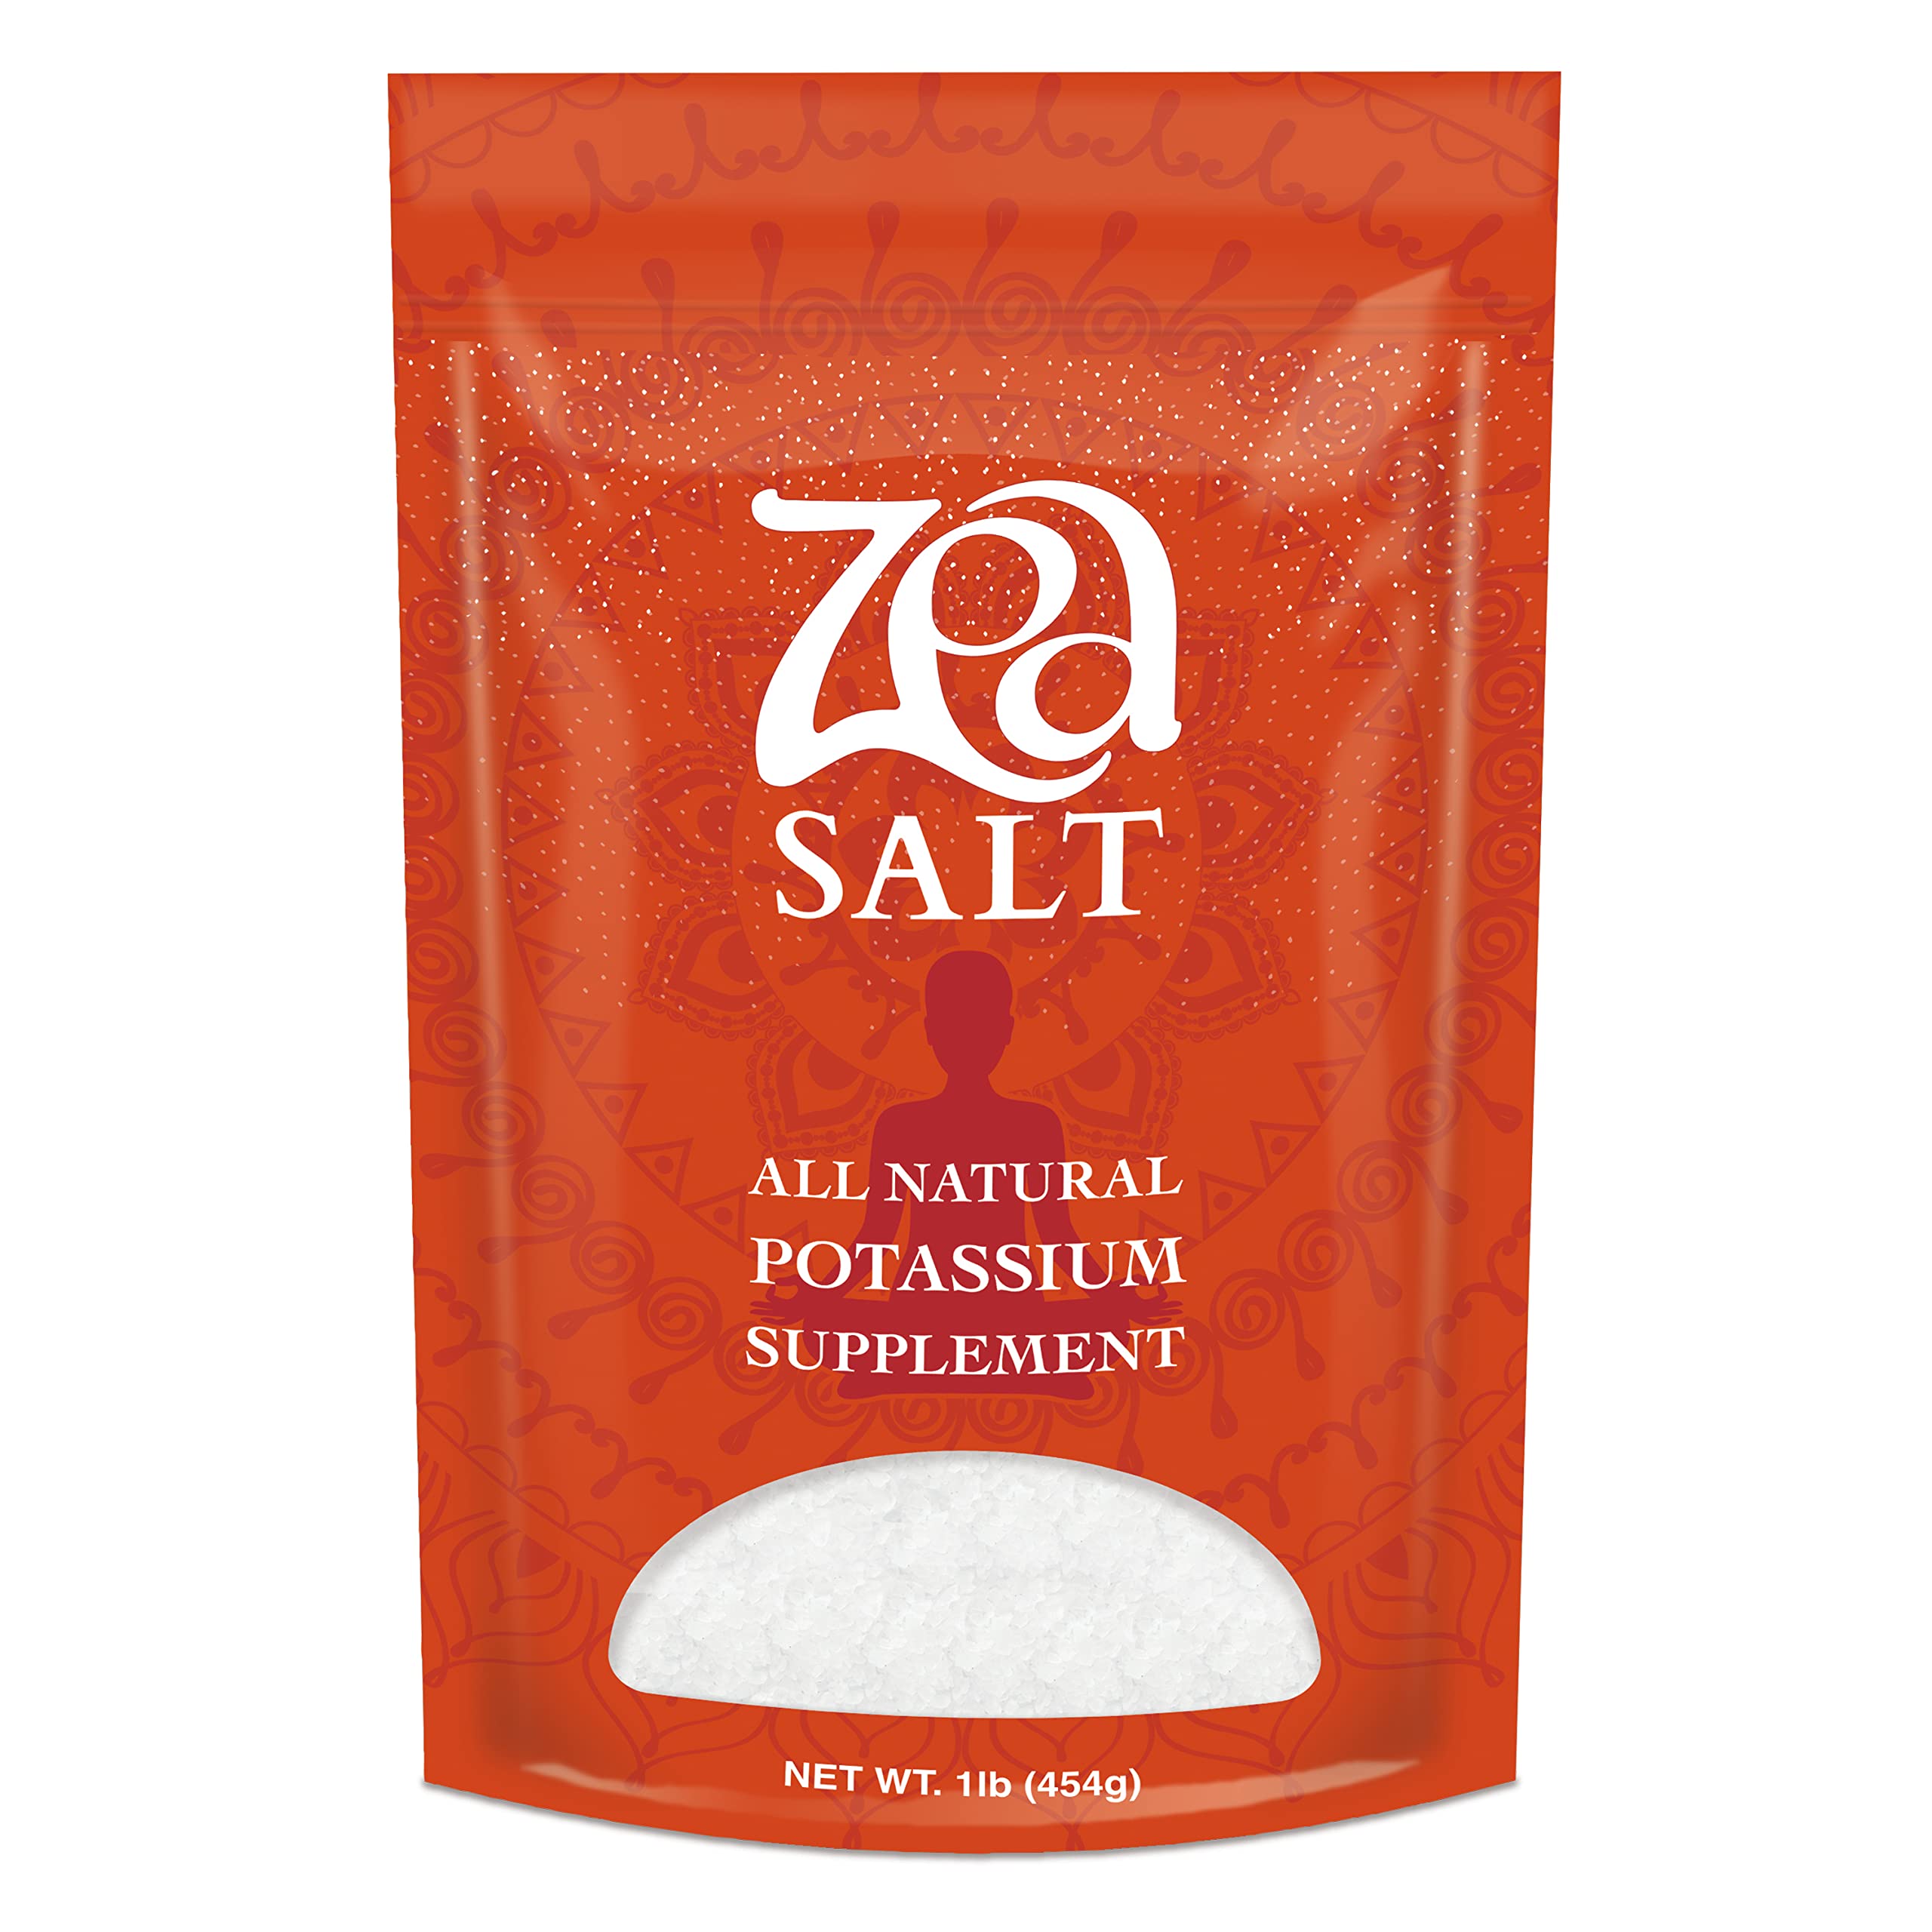 Salt substitute